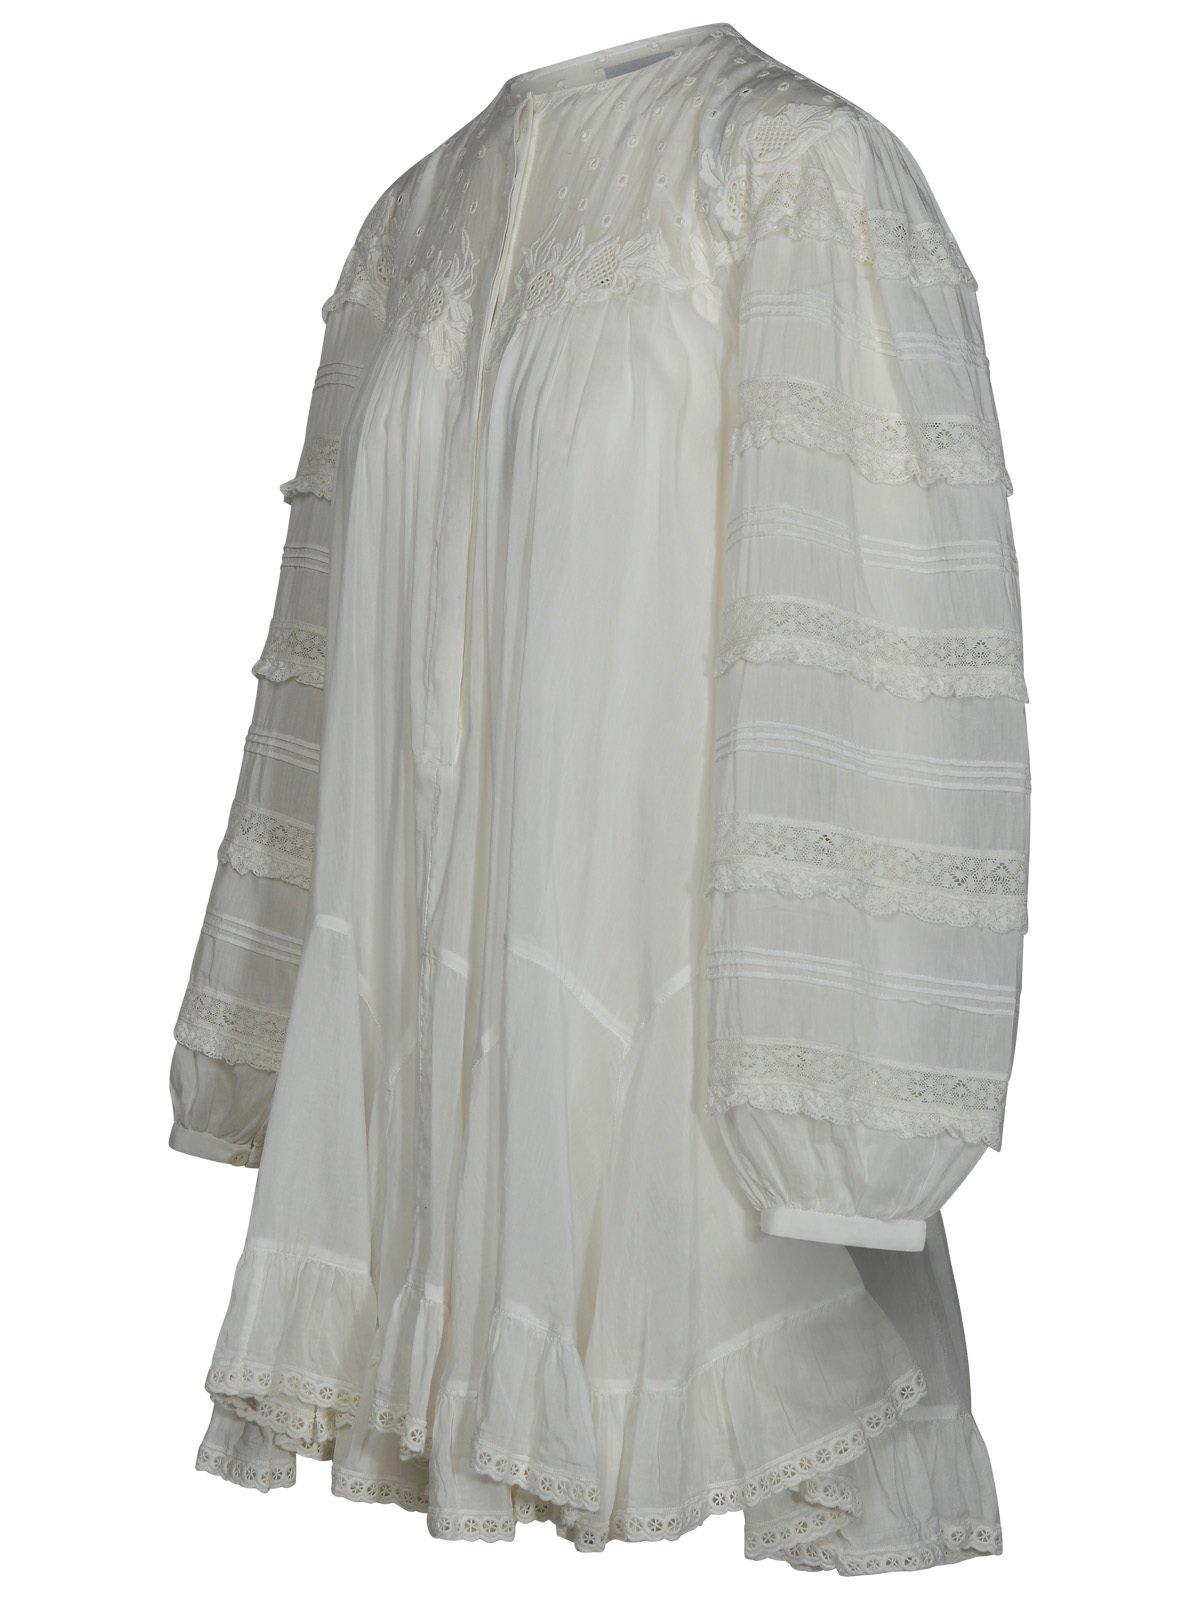 Shop Isabel Marant Gyliane Dress In White